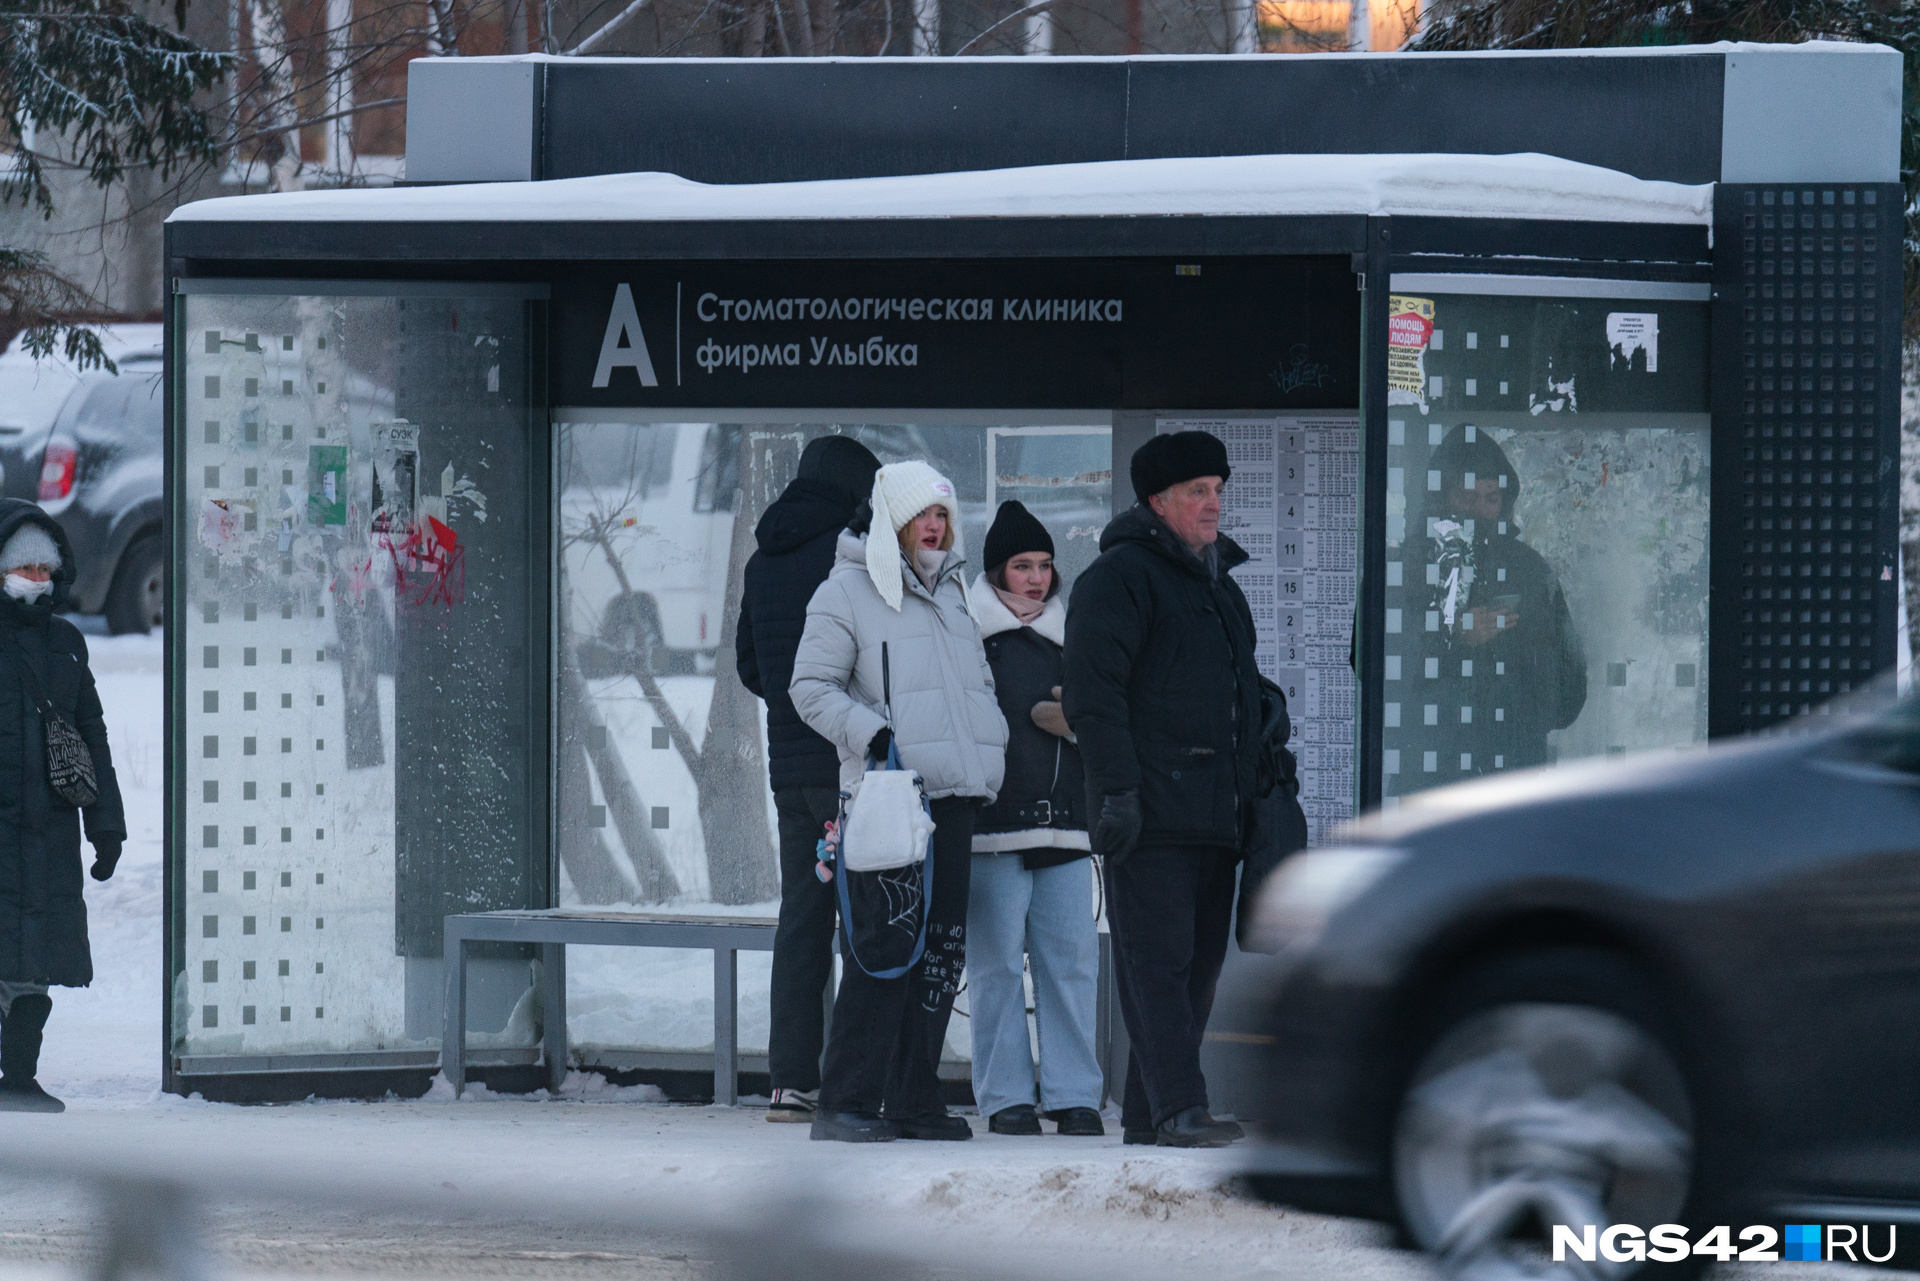 Морозное утро понедельника: как кемеровчане мерзли на остановках в -36